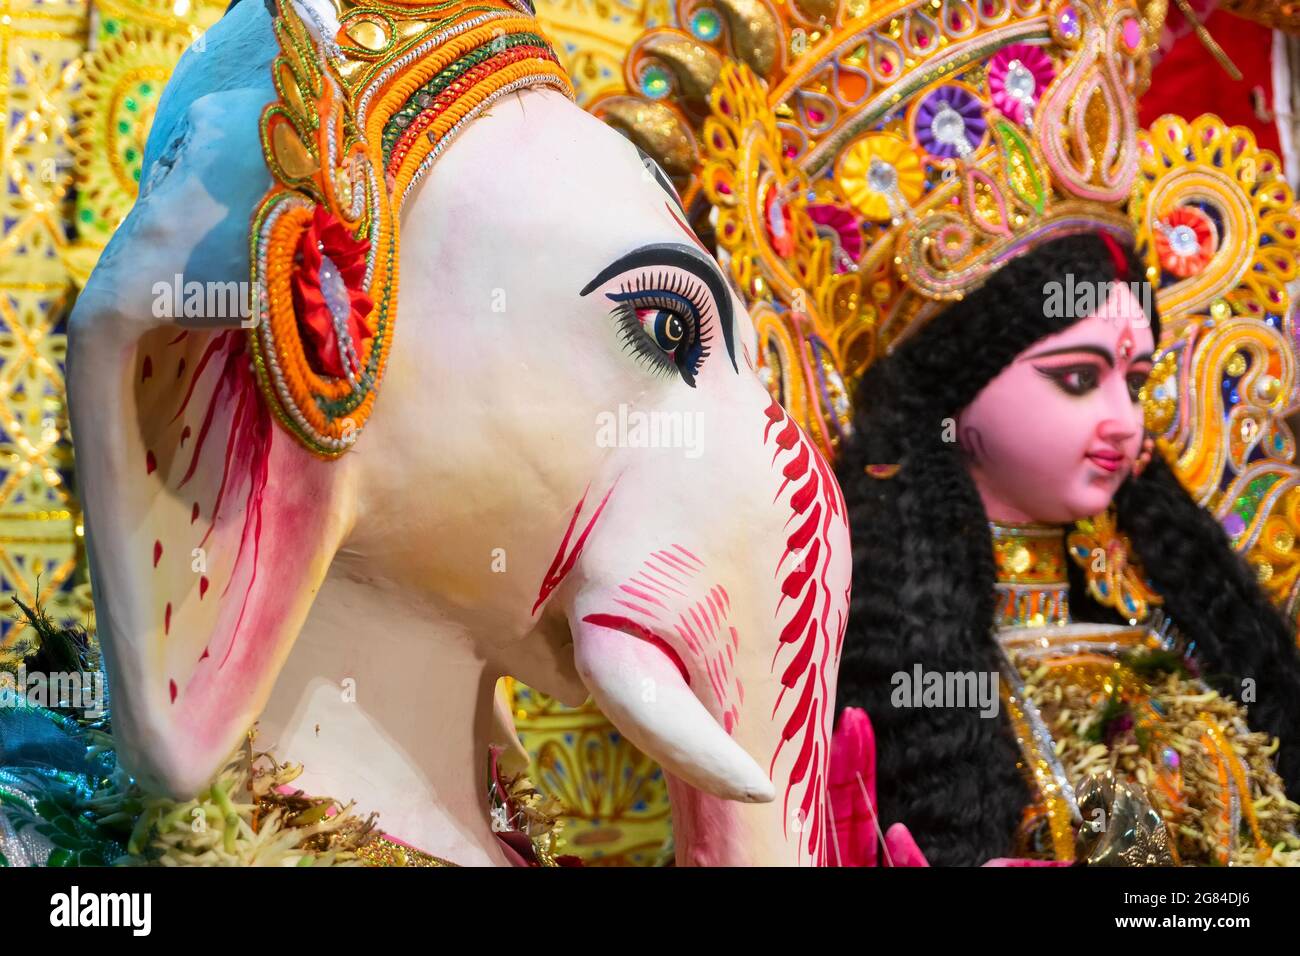 Kolkata, Indien - 17. Oktober 2018 : dekoriertes Idol von herrn Ganesha neben Göttin Durga, Sohn neben Mutter, während Durga Puja angebetet. Große Stockfoto